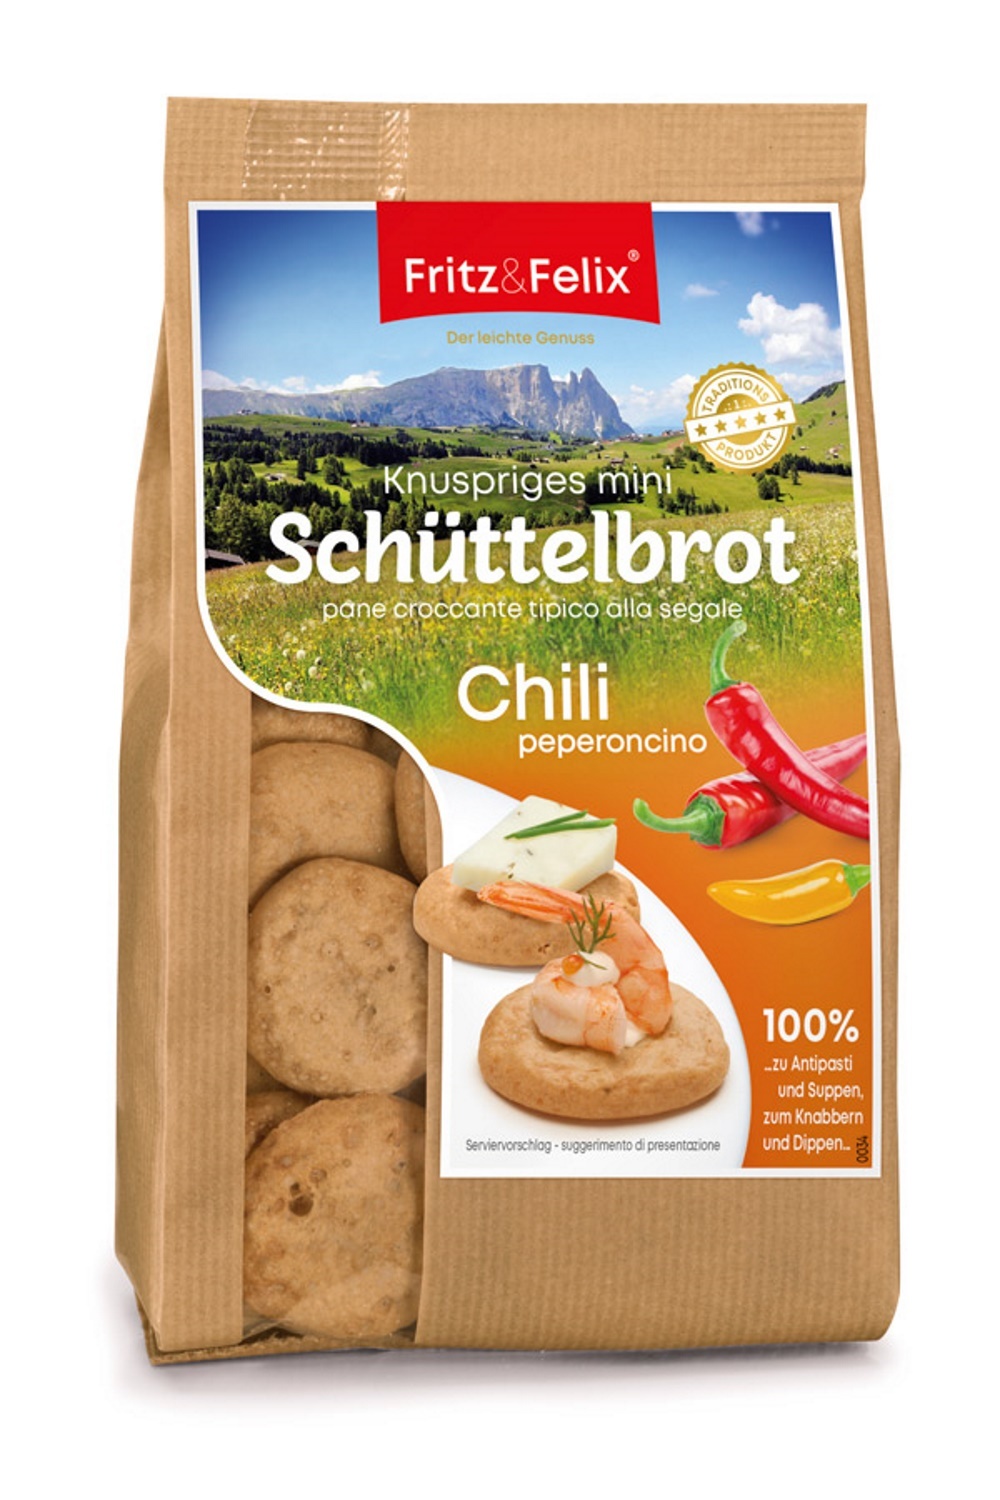 Family Happys mit Chili & Paprika Karton 12 x 125 gr. - Fritz & Felix